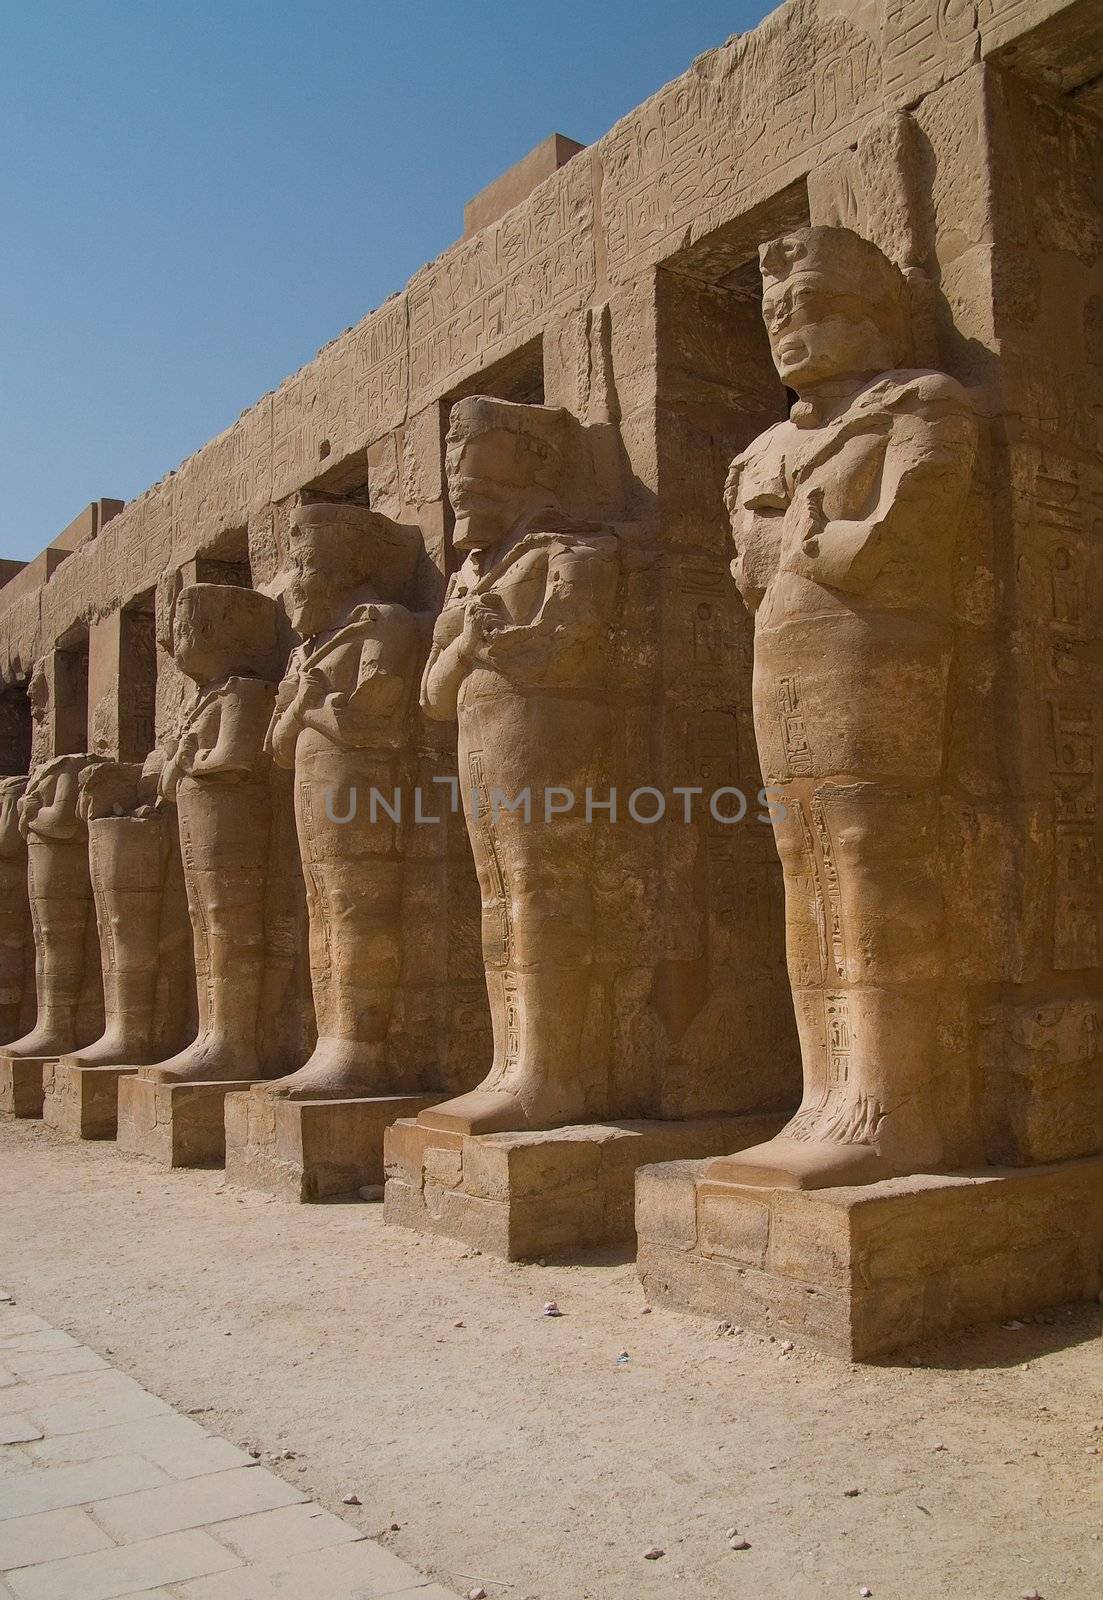 Statues in karnak temple, Luxor Egypt.